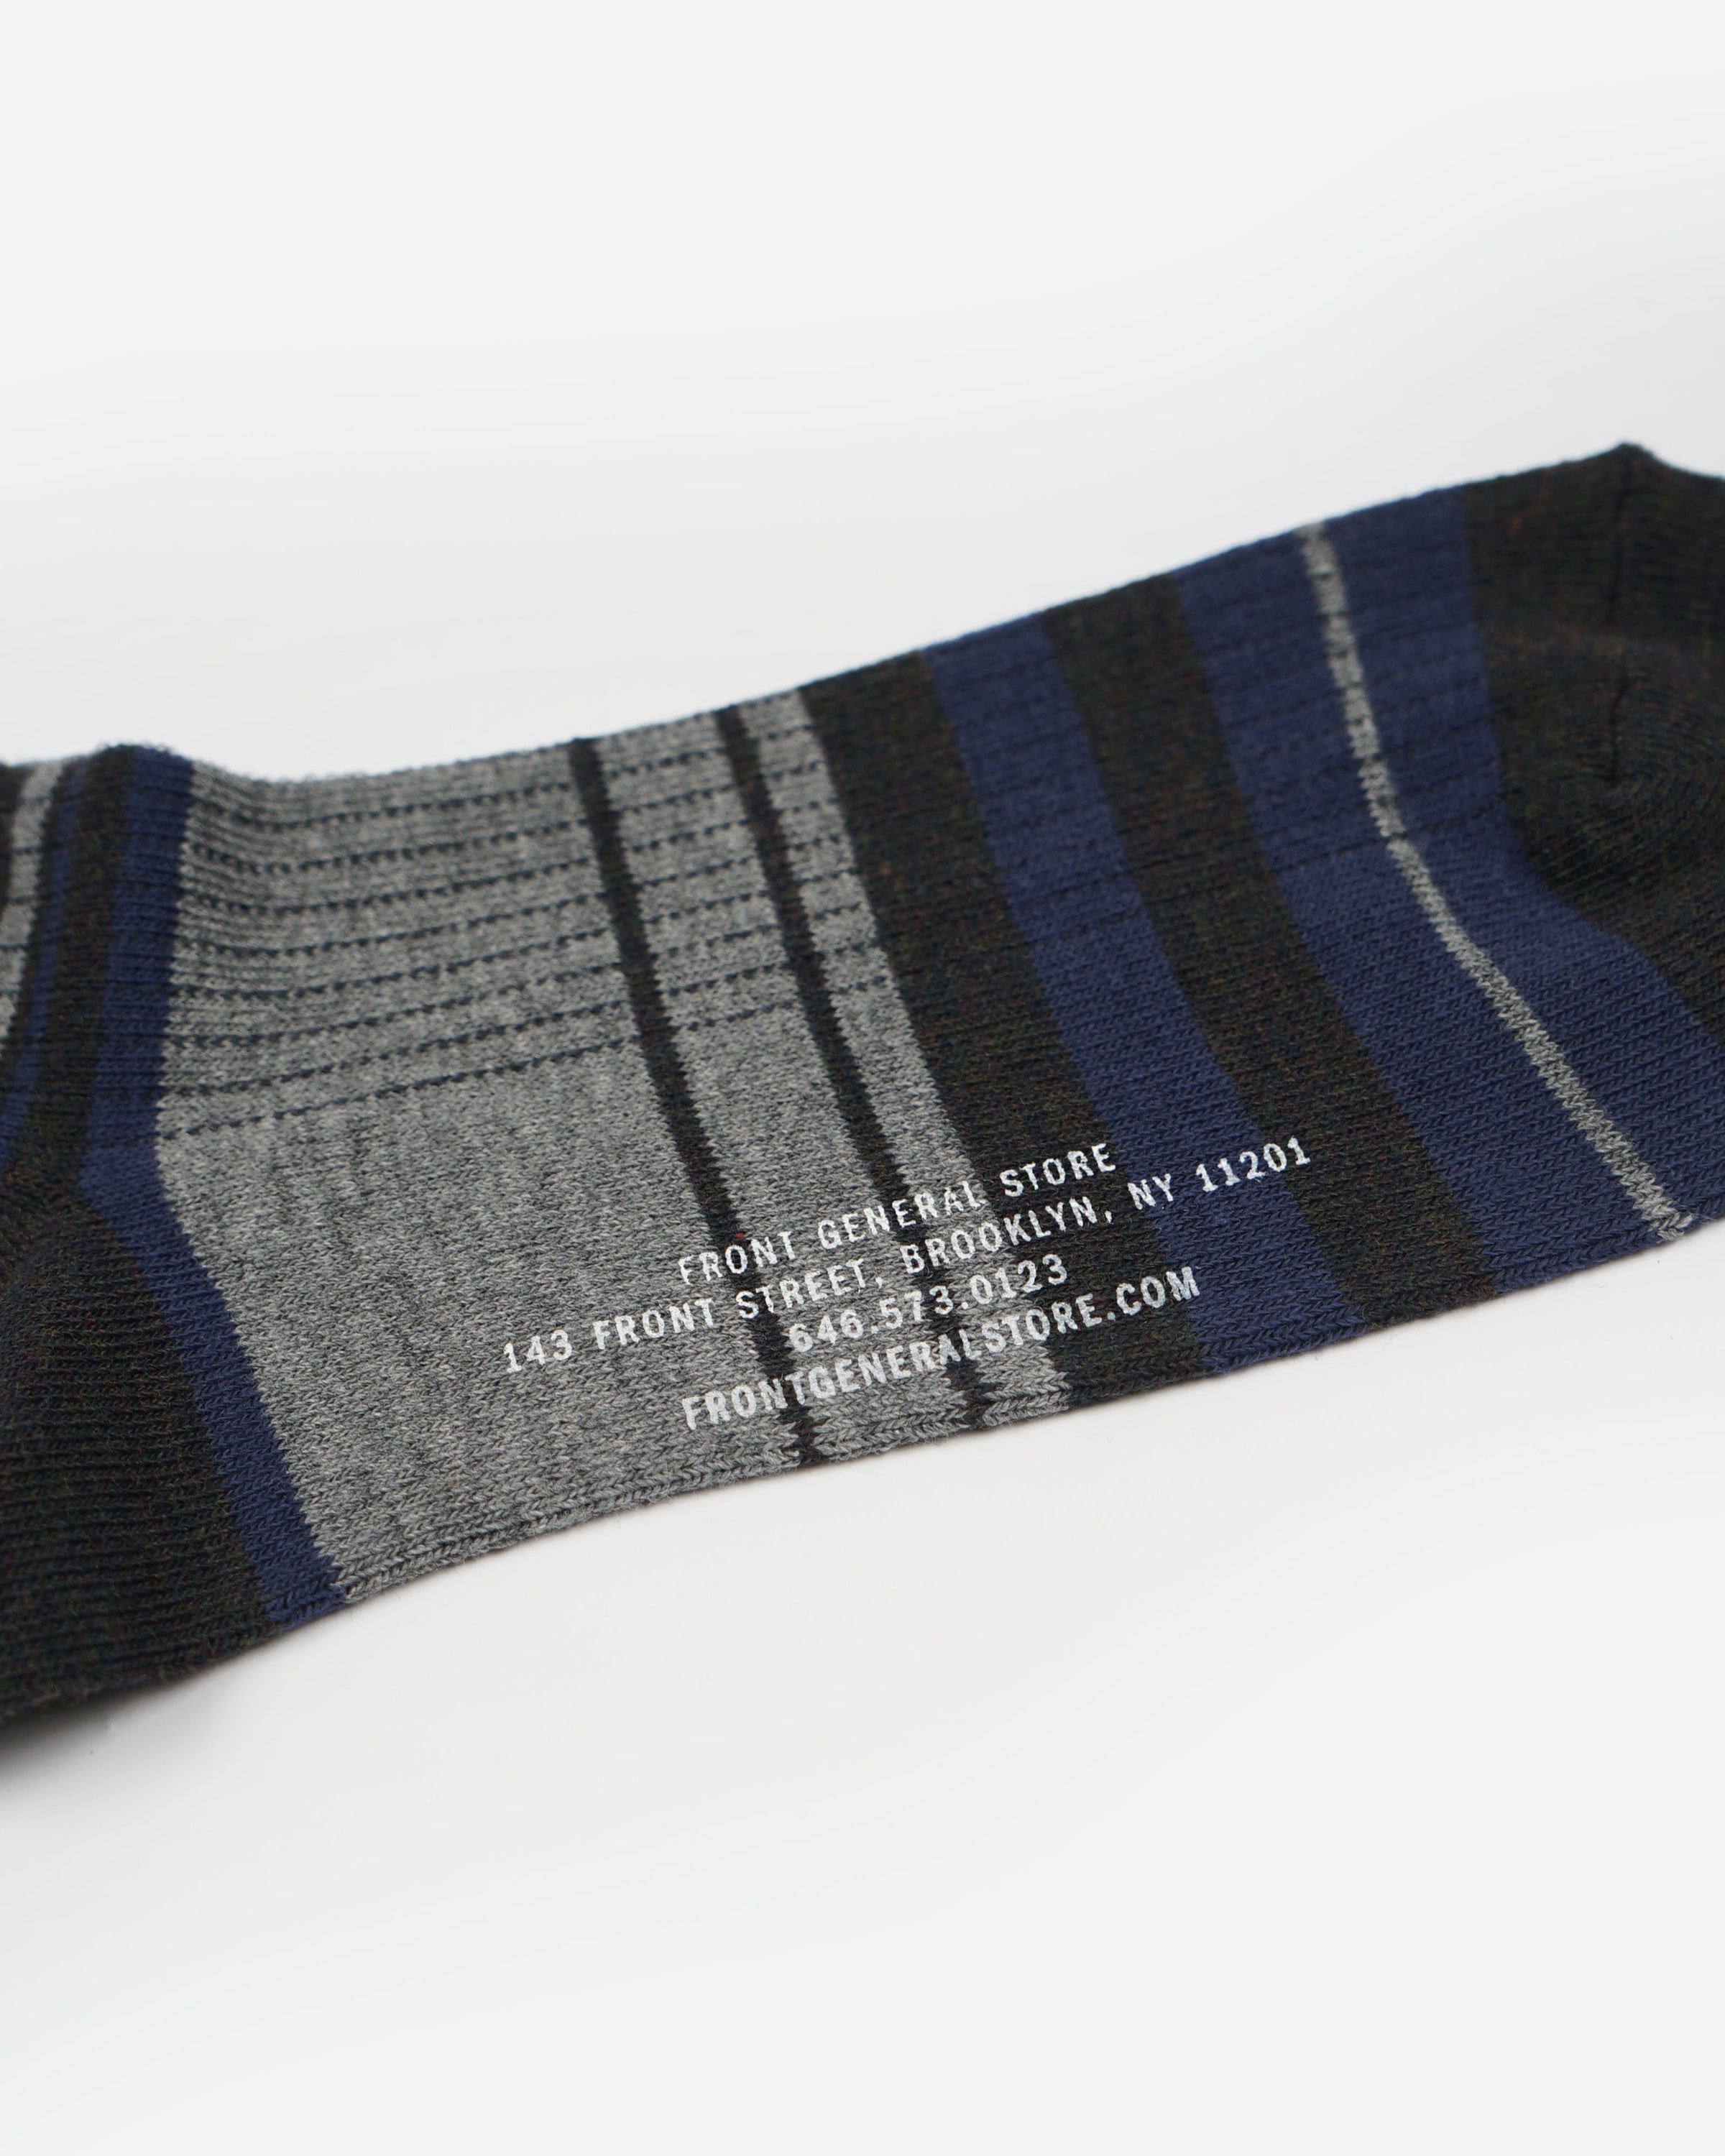 Multicolor Striped Socks / Gray x Navy x Black